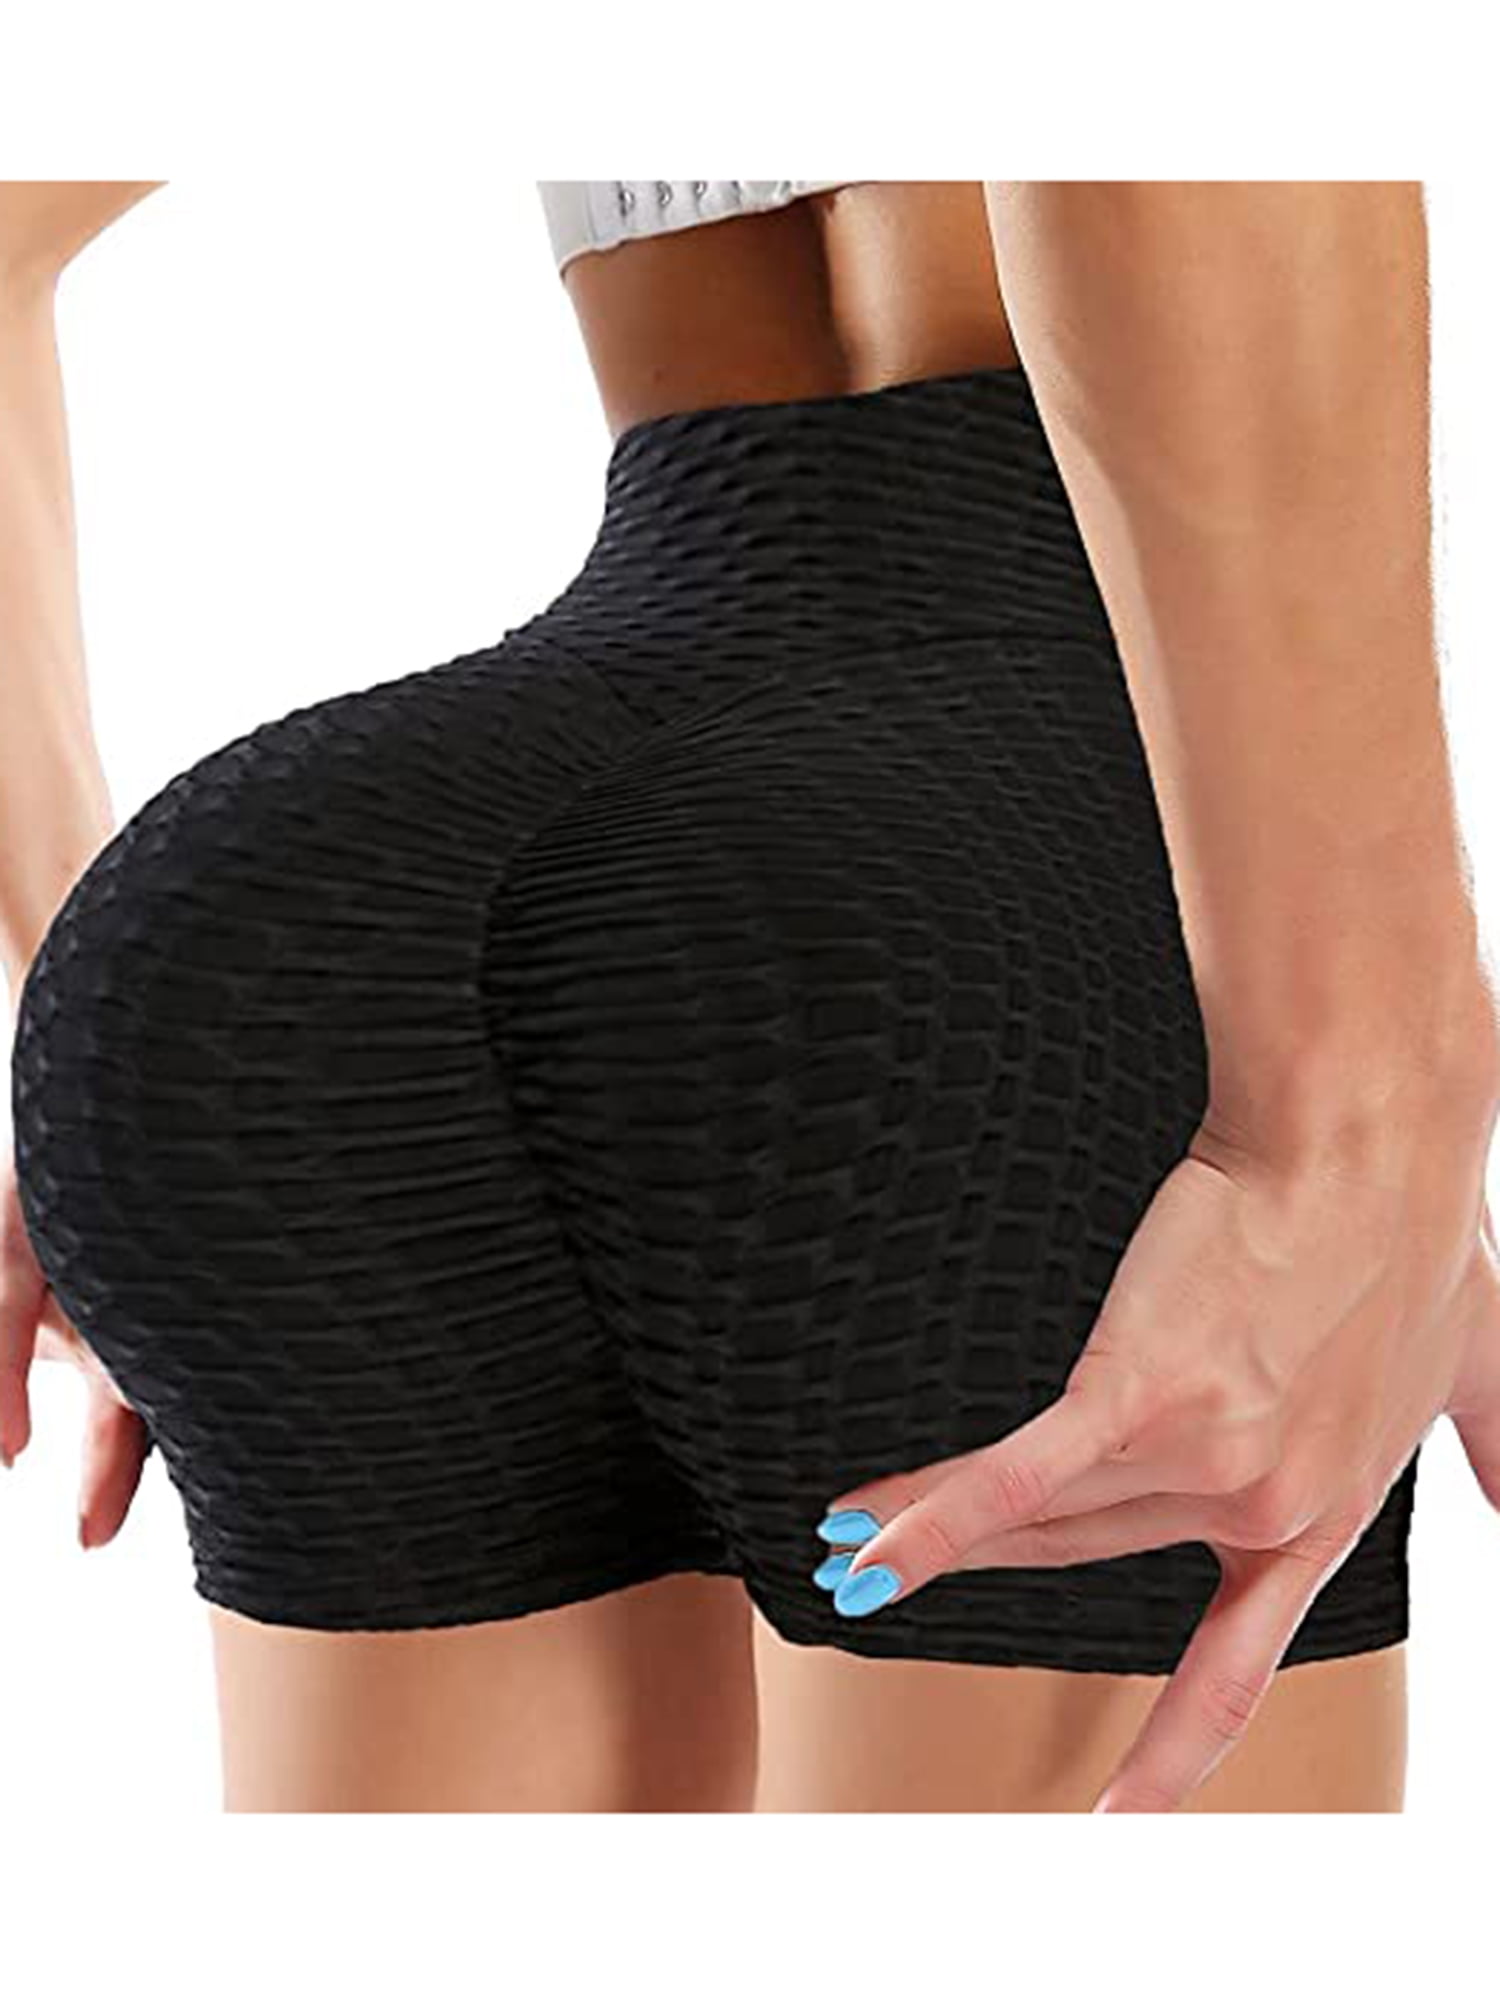 Women Yoga Shorts High Waist GYM Hot Pants Scrunch Butt Honeycomb